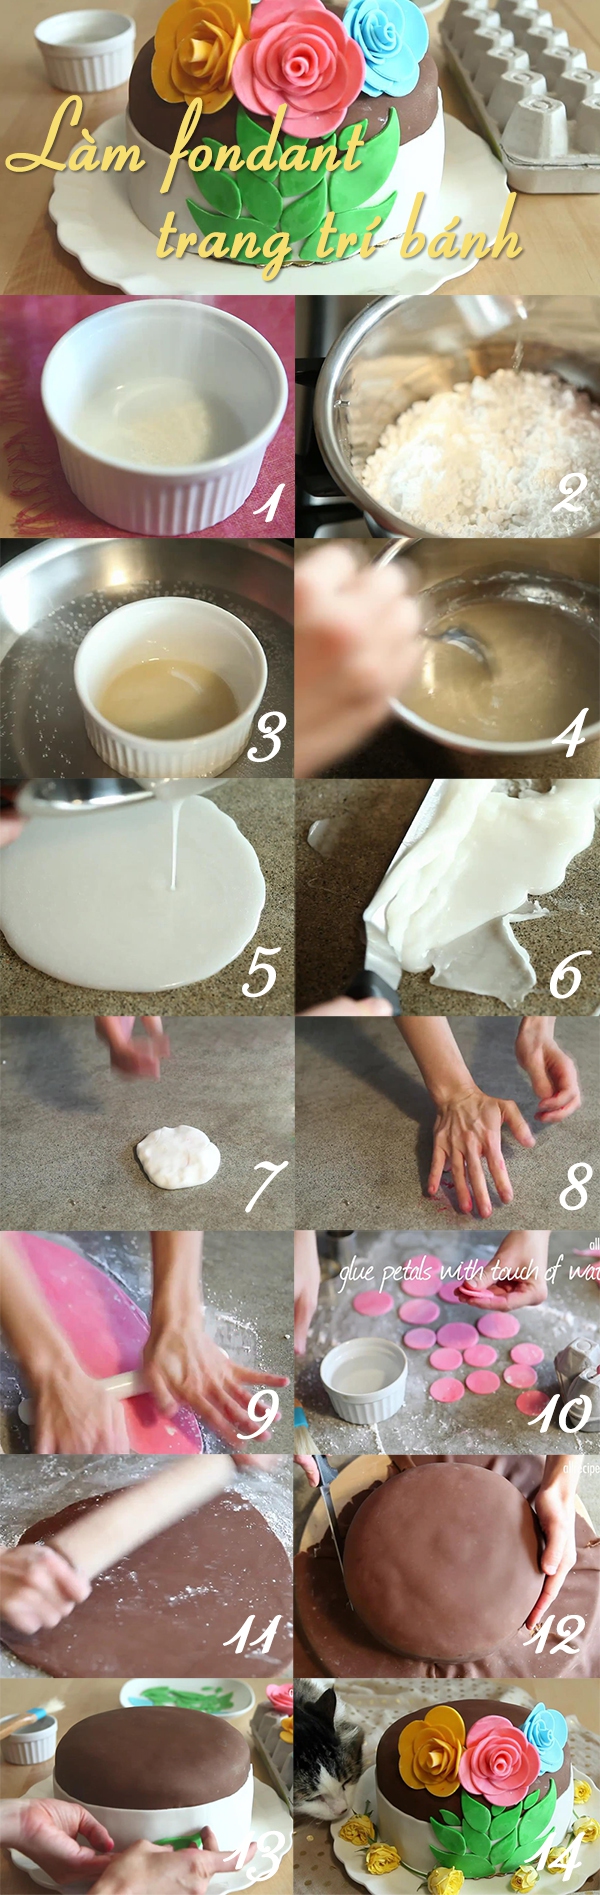 Cách làm fondant trang trí bánh kem giống trong MasterChef 1